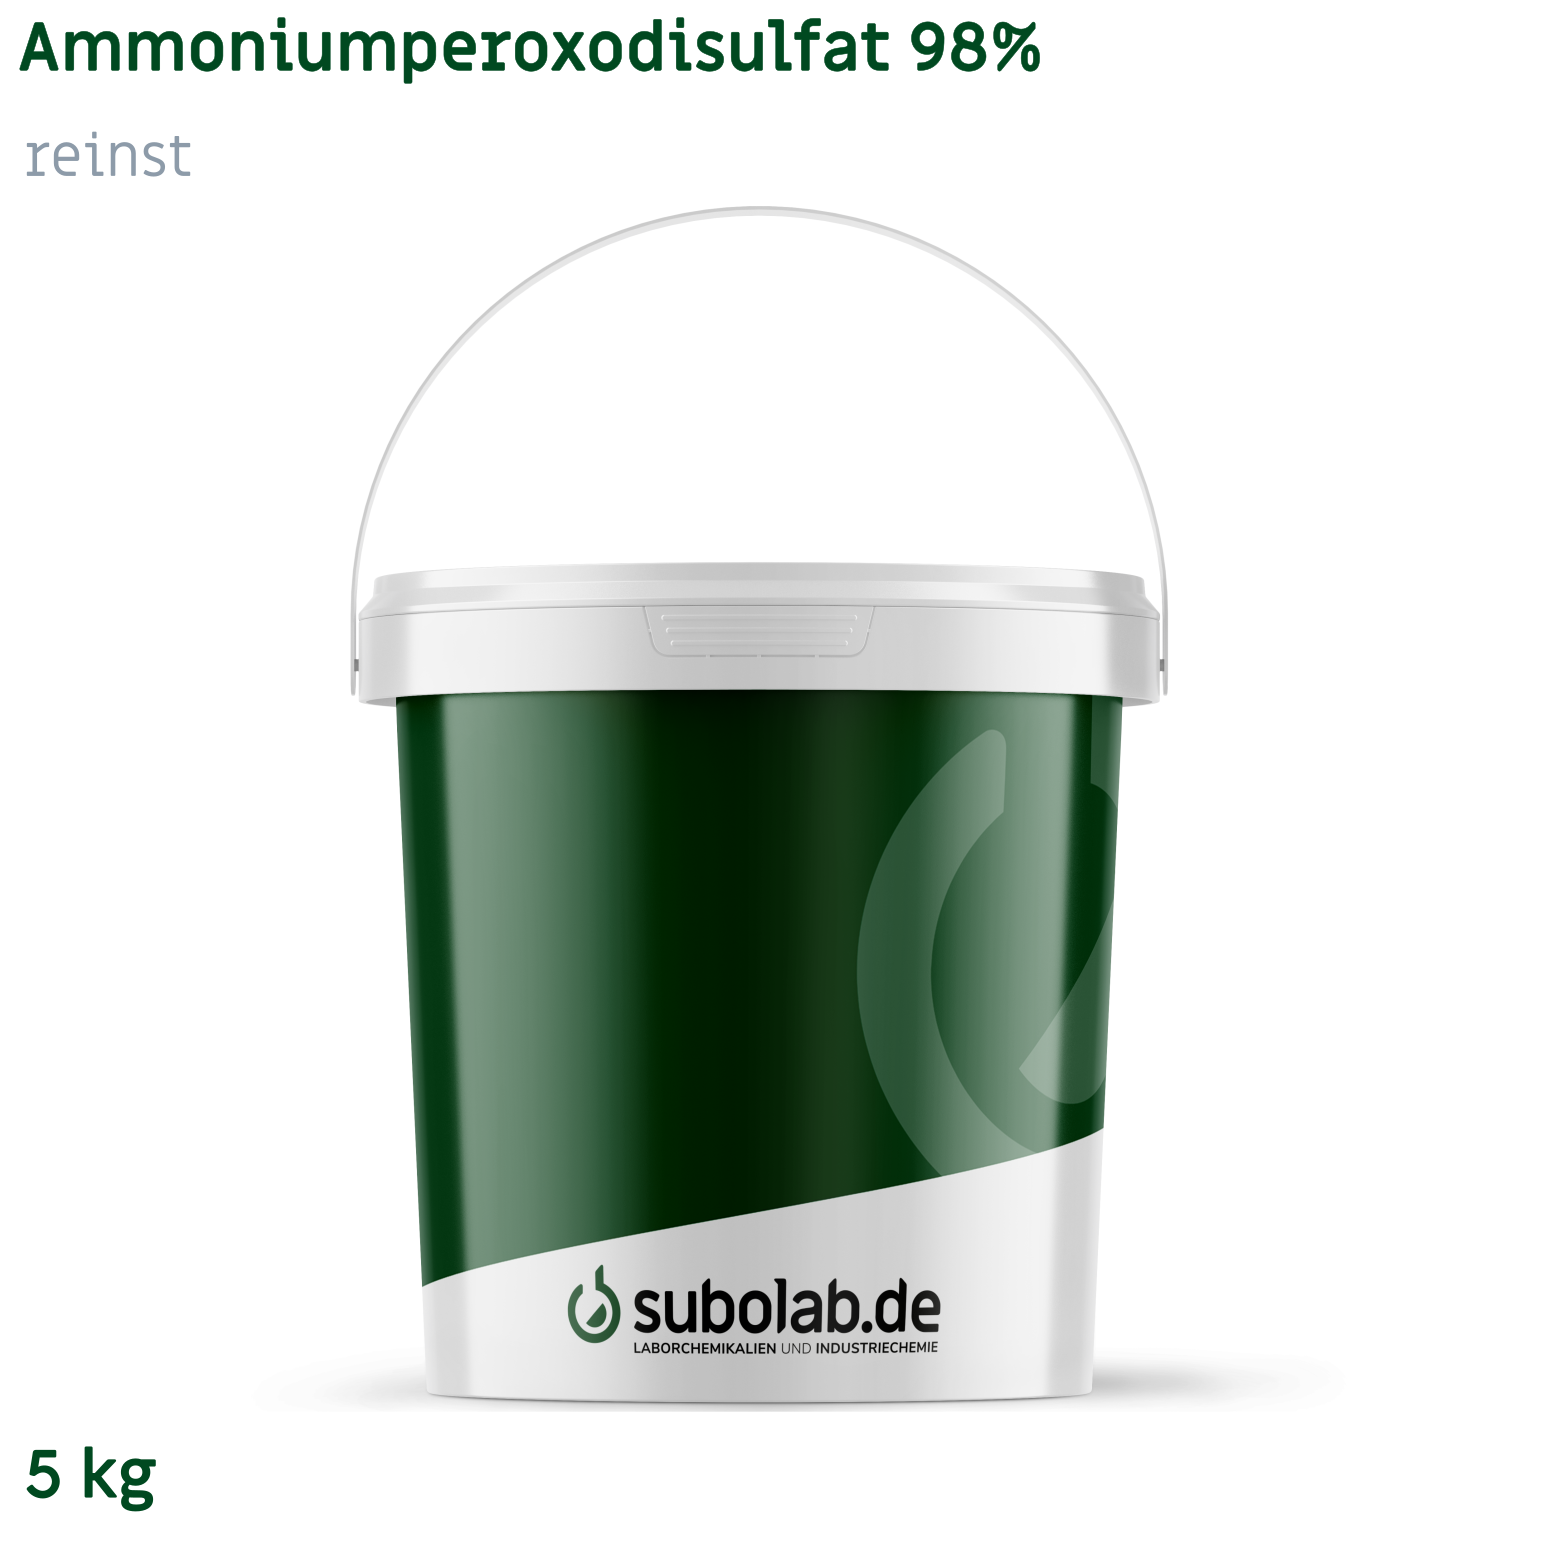 Bild von Ammoniumperoxodisulfat 98% reinst (5 kg)